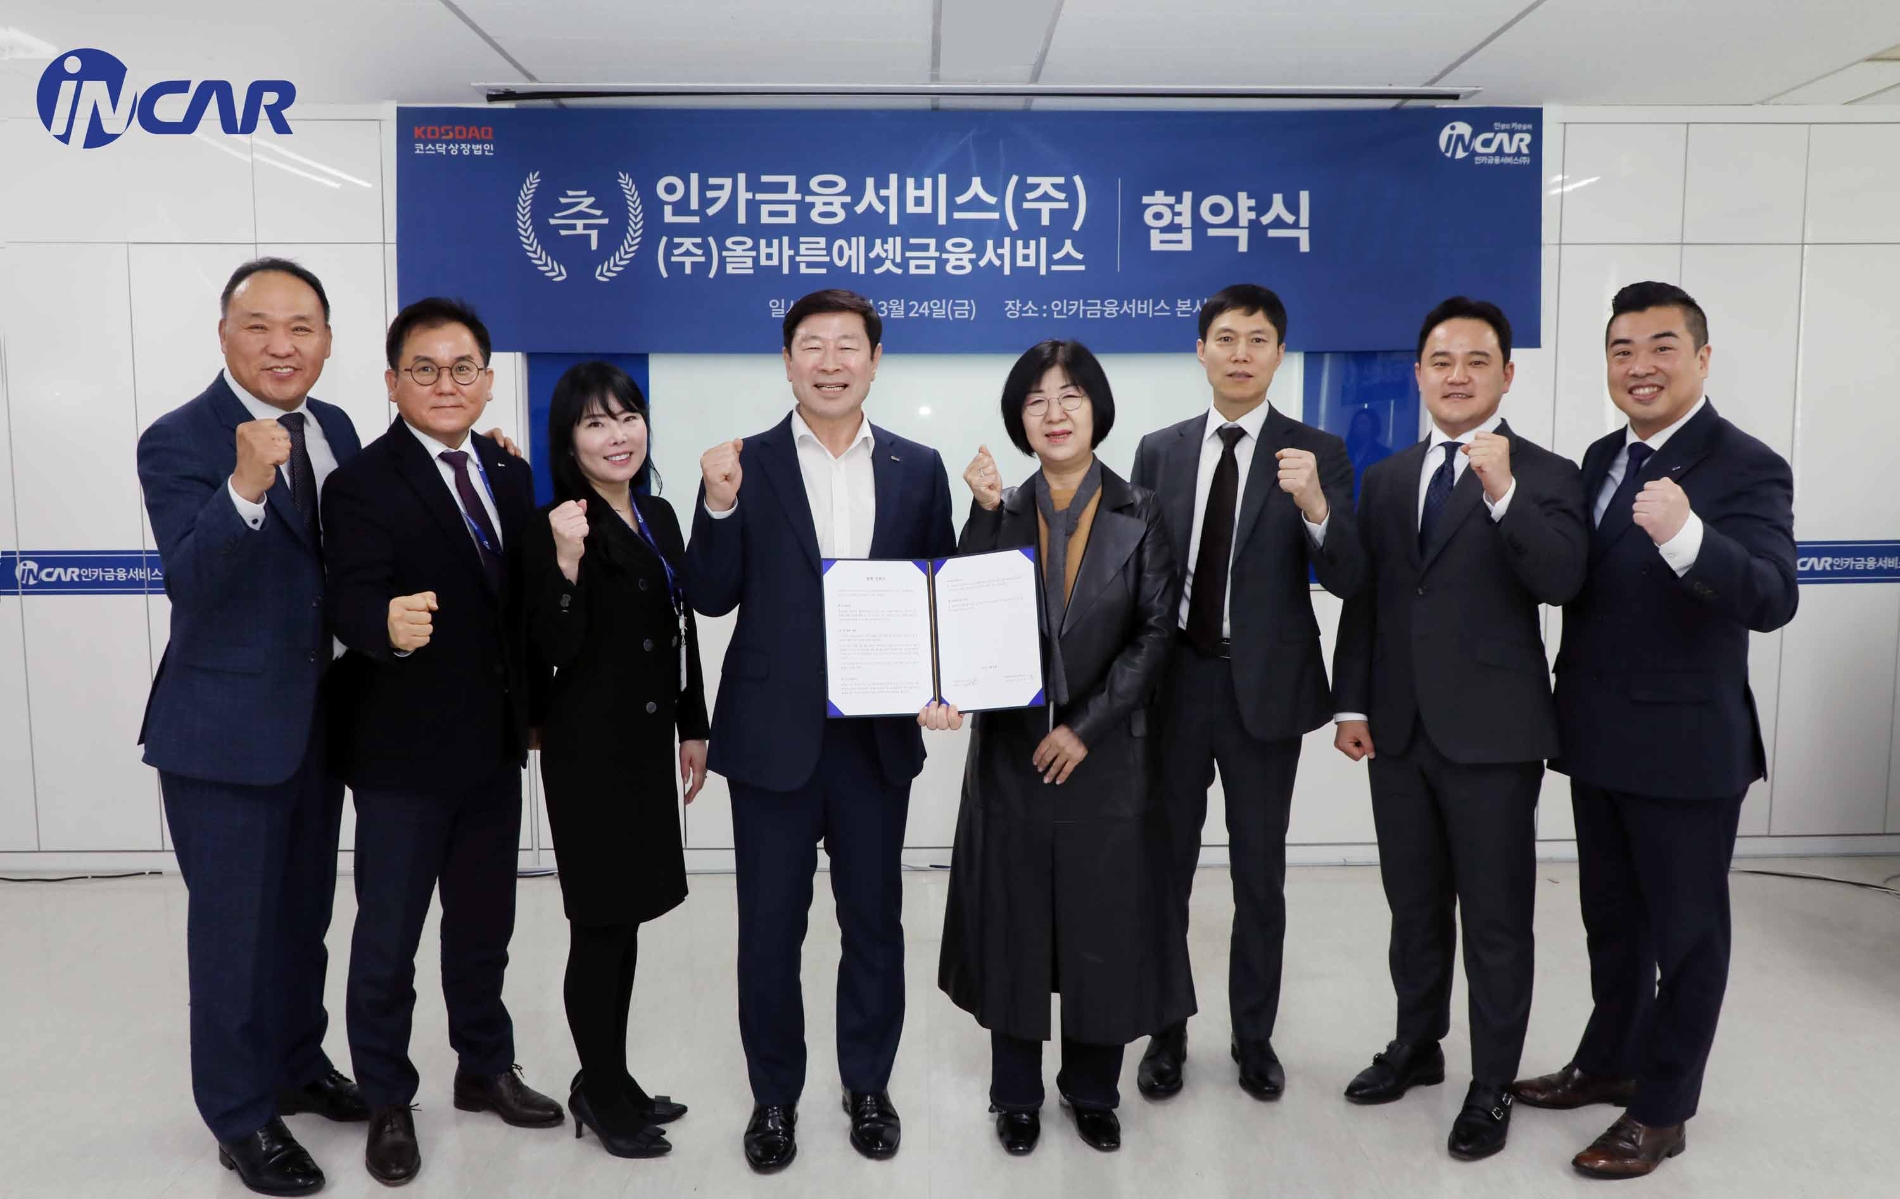 인카금융서비스는 지난 24일 서울 성수동 인카금융서비스 본사에서 ㈜올바른에셋금융서비스(이하 올바른에셋)와 협약식을 개최했다고 27일 밝혔다./사진=인카금융서비스